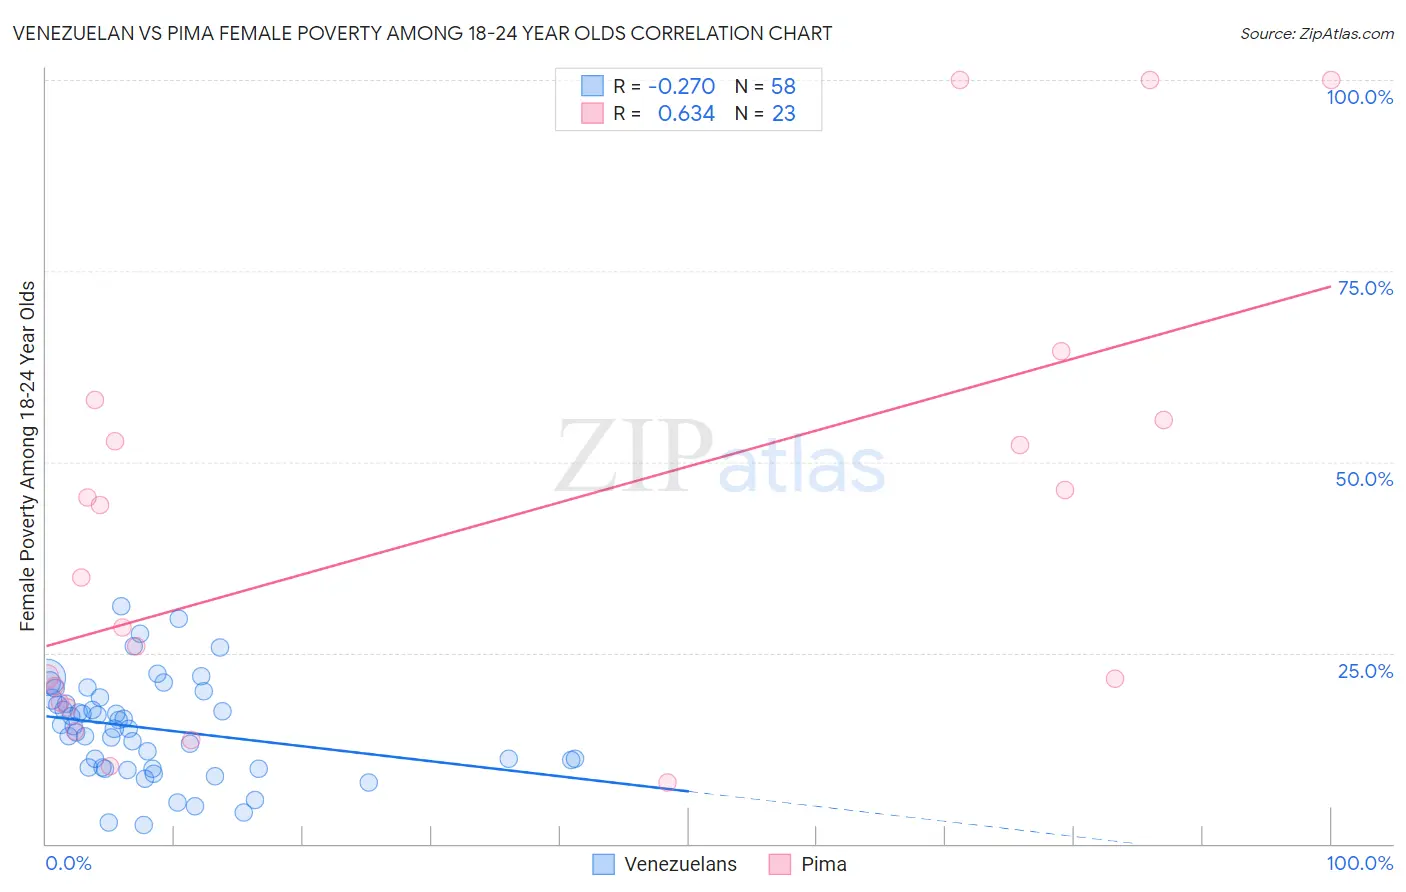 Venezuelan vs Pima Female Poverty Among 18-24 Year Olds